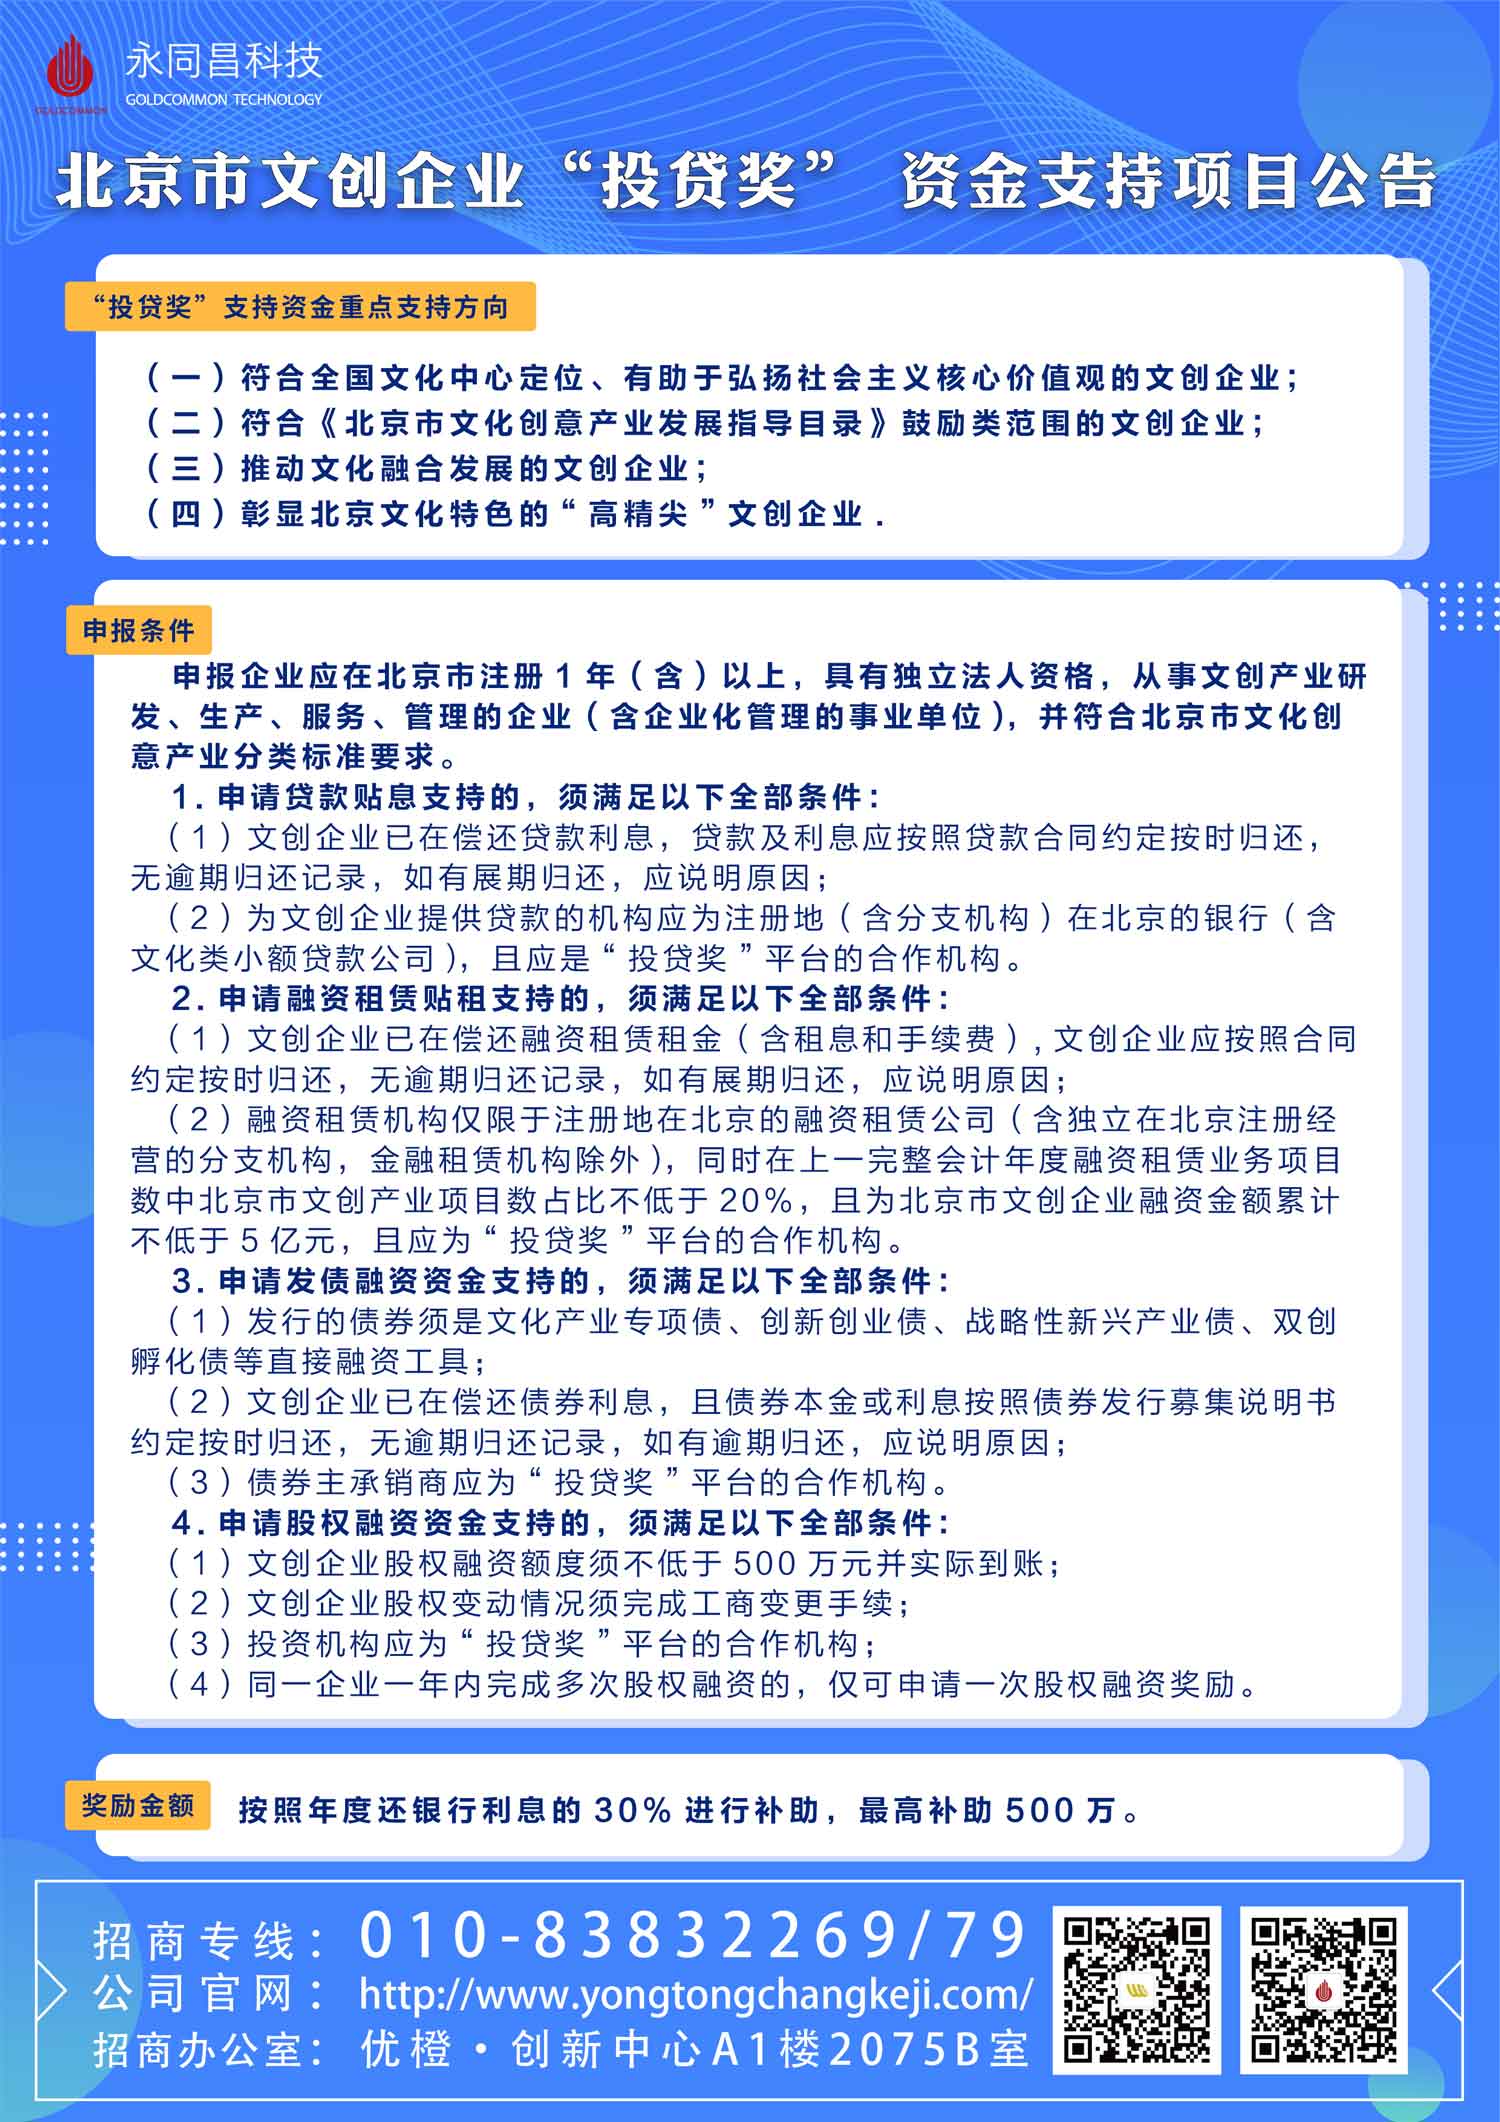 圓滿舉辦 | U+創享匯【2020】北京市“房租通”和“投貸獎”政策解讀及申報主題分享會